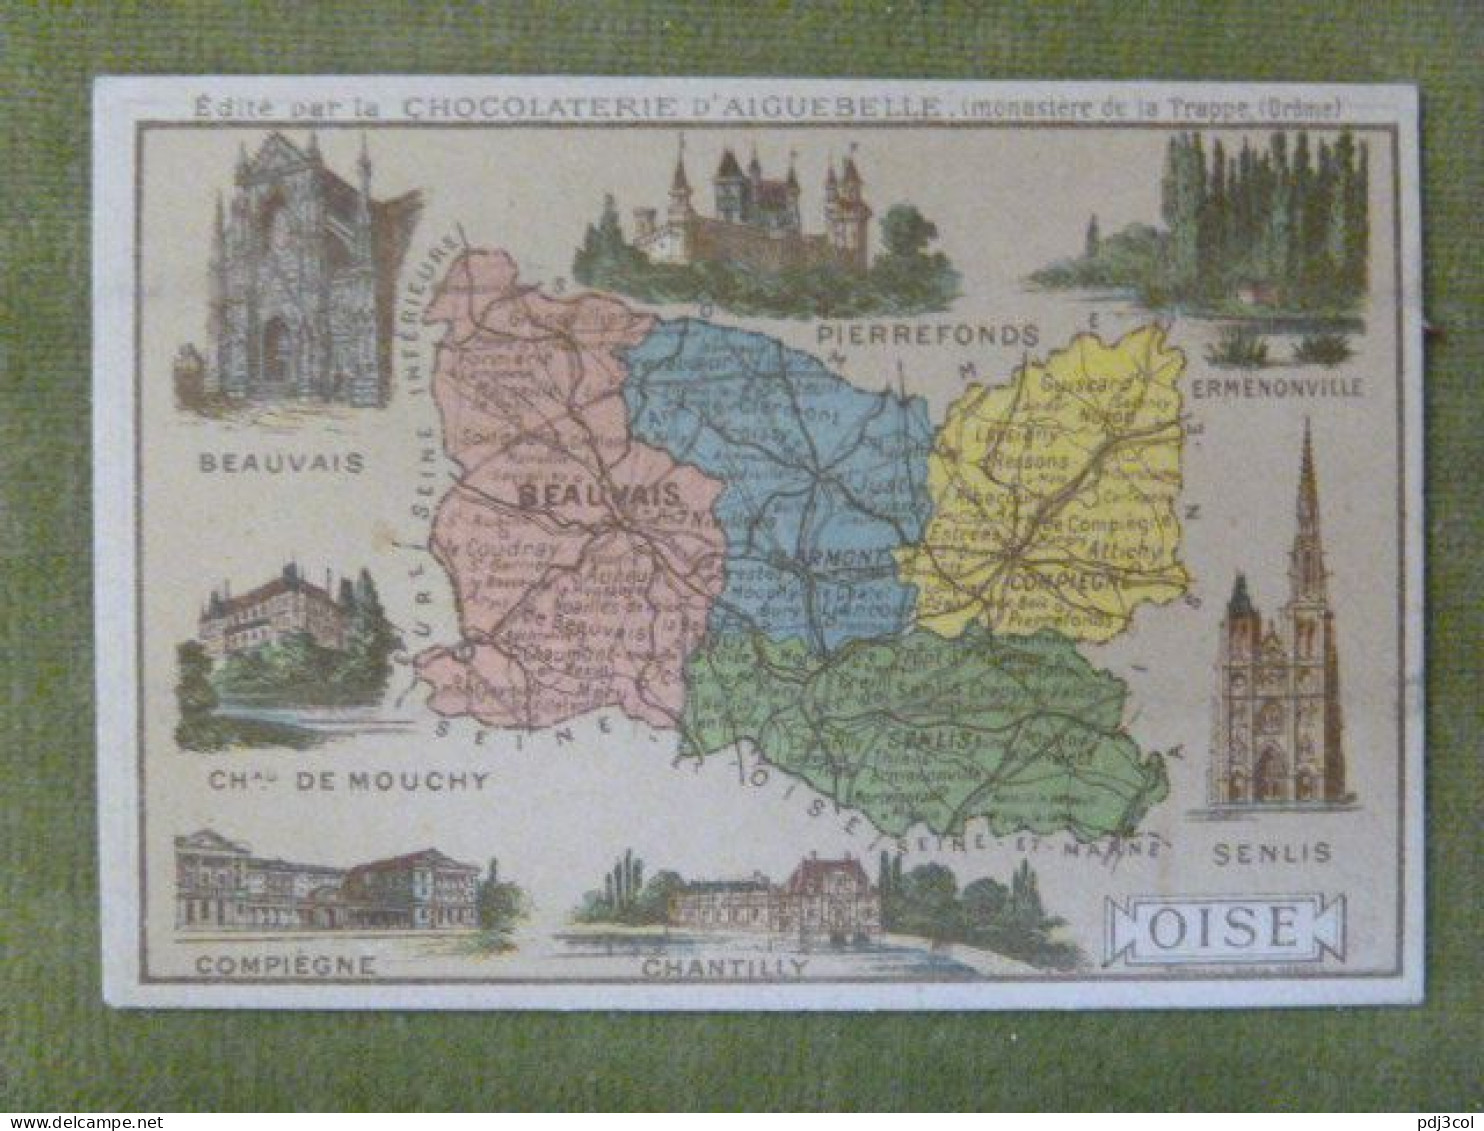 Lot de 10 chromos - Départements - Charente, Meuse, Oise, Bouches du Rhône, Nièvre, Corrèze, Nord, Aveyron....